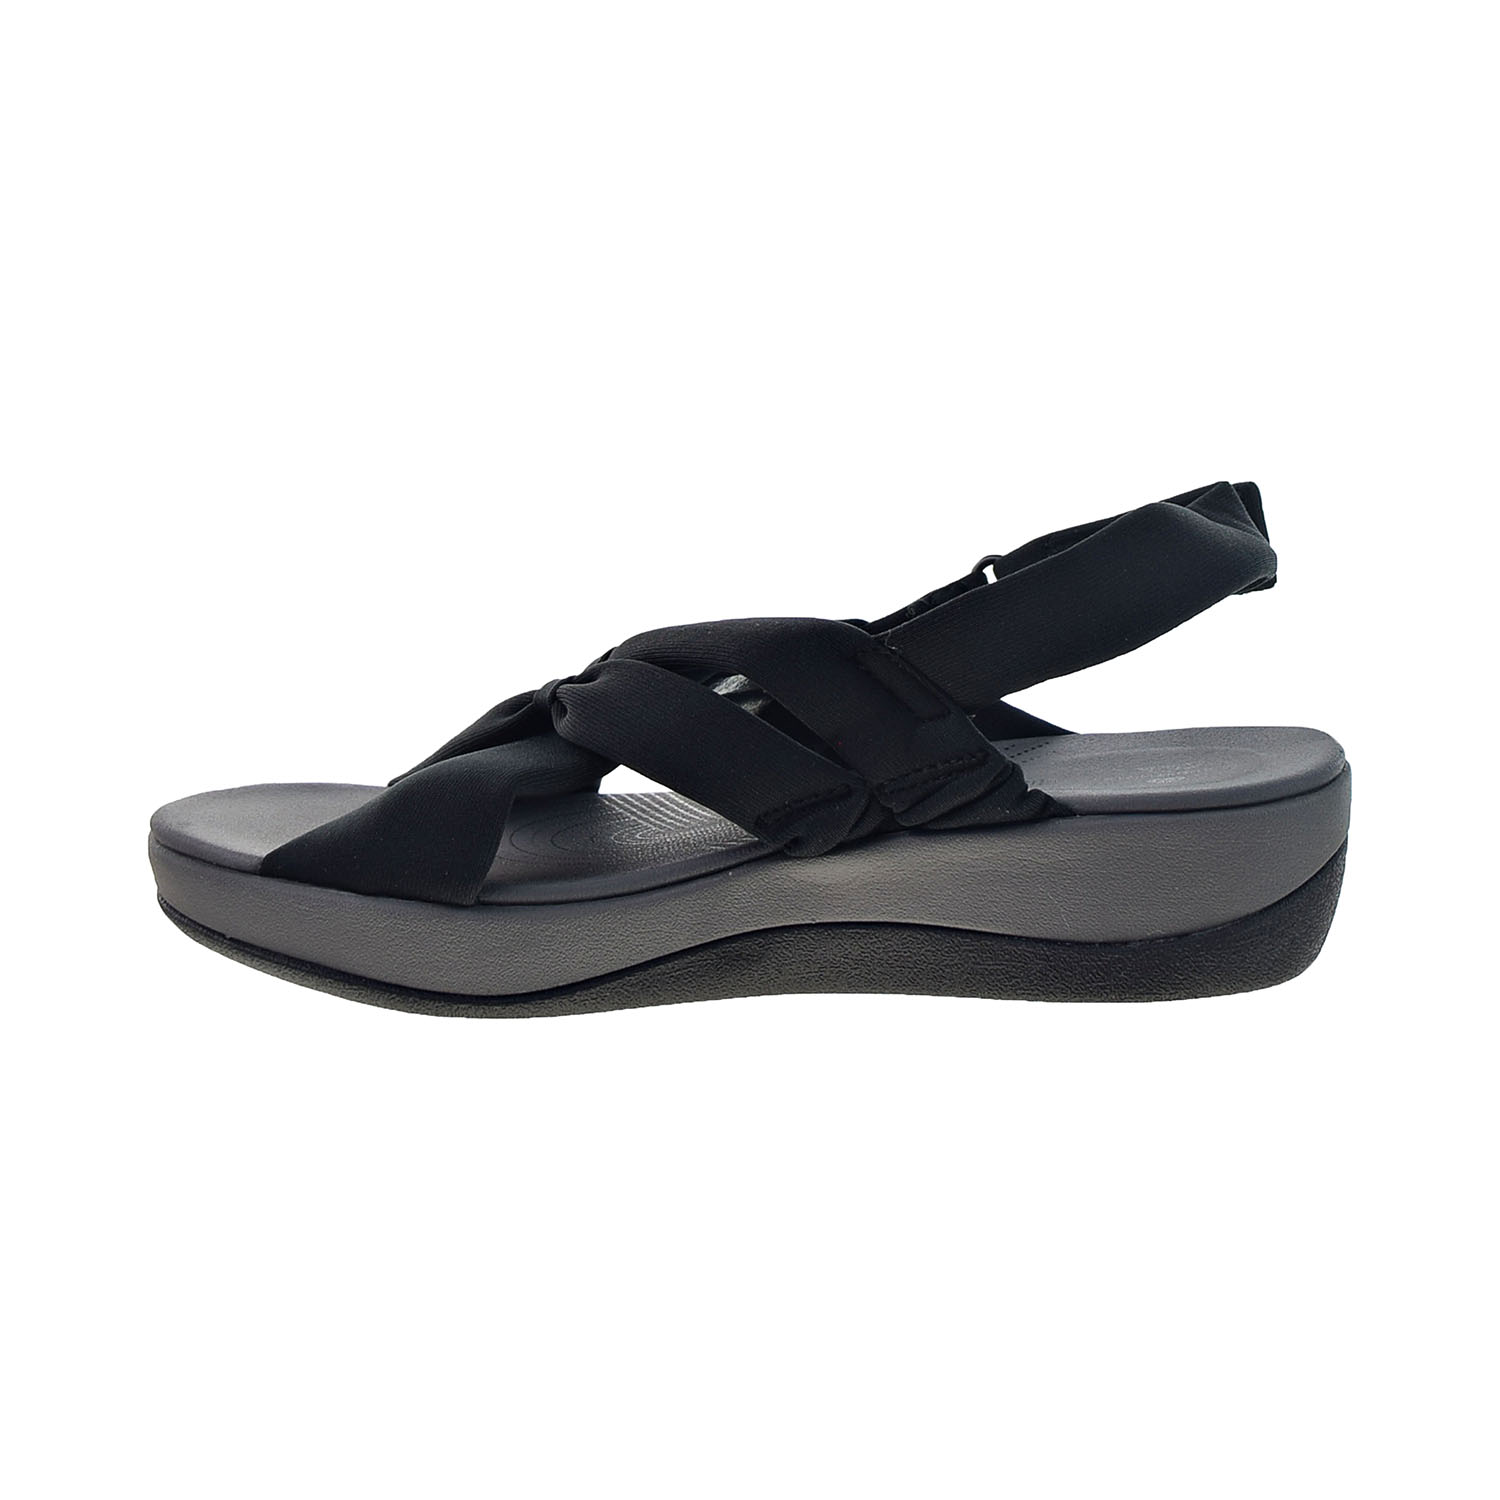 Clarks Arla Belle (Wide) Women's Sandals Black 26143178-W